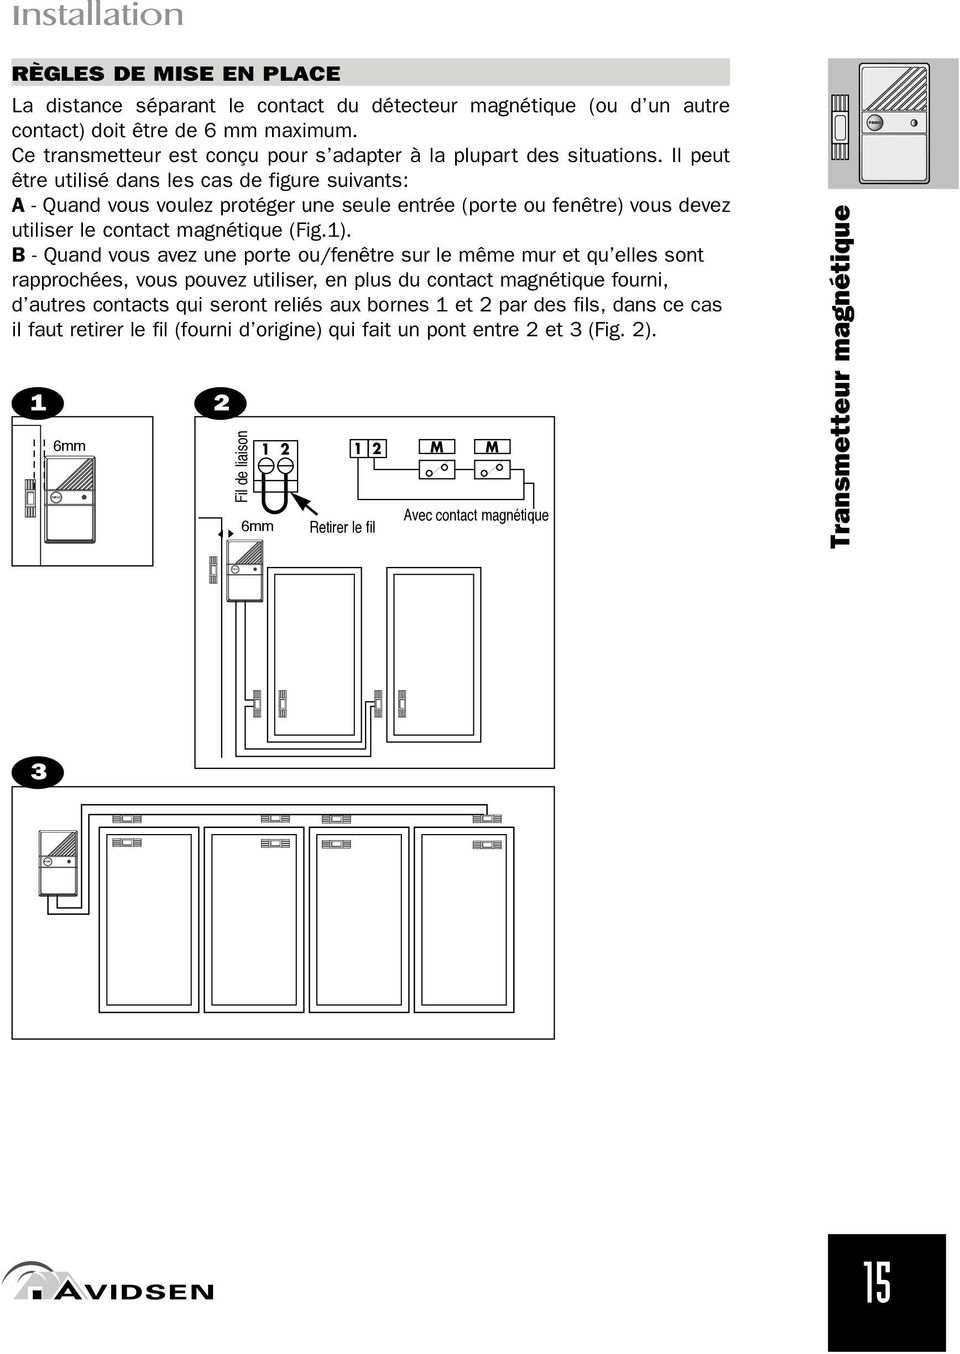 Il peut être utilisé dans les cas de figure suivants: A - Quand vous voulez protéger une seule entrée (porte ou fenêtre) vous devez utiliser le contact magnétique (Fig.1).